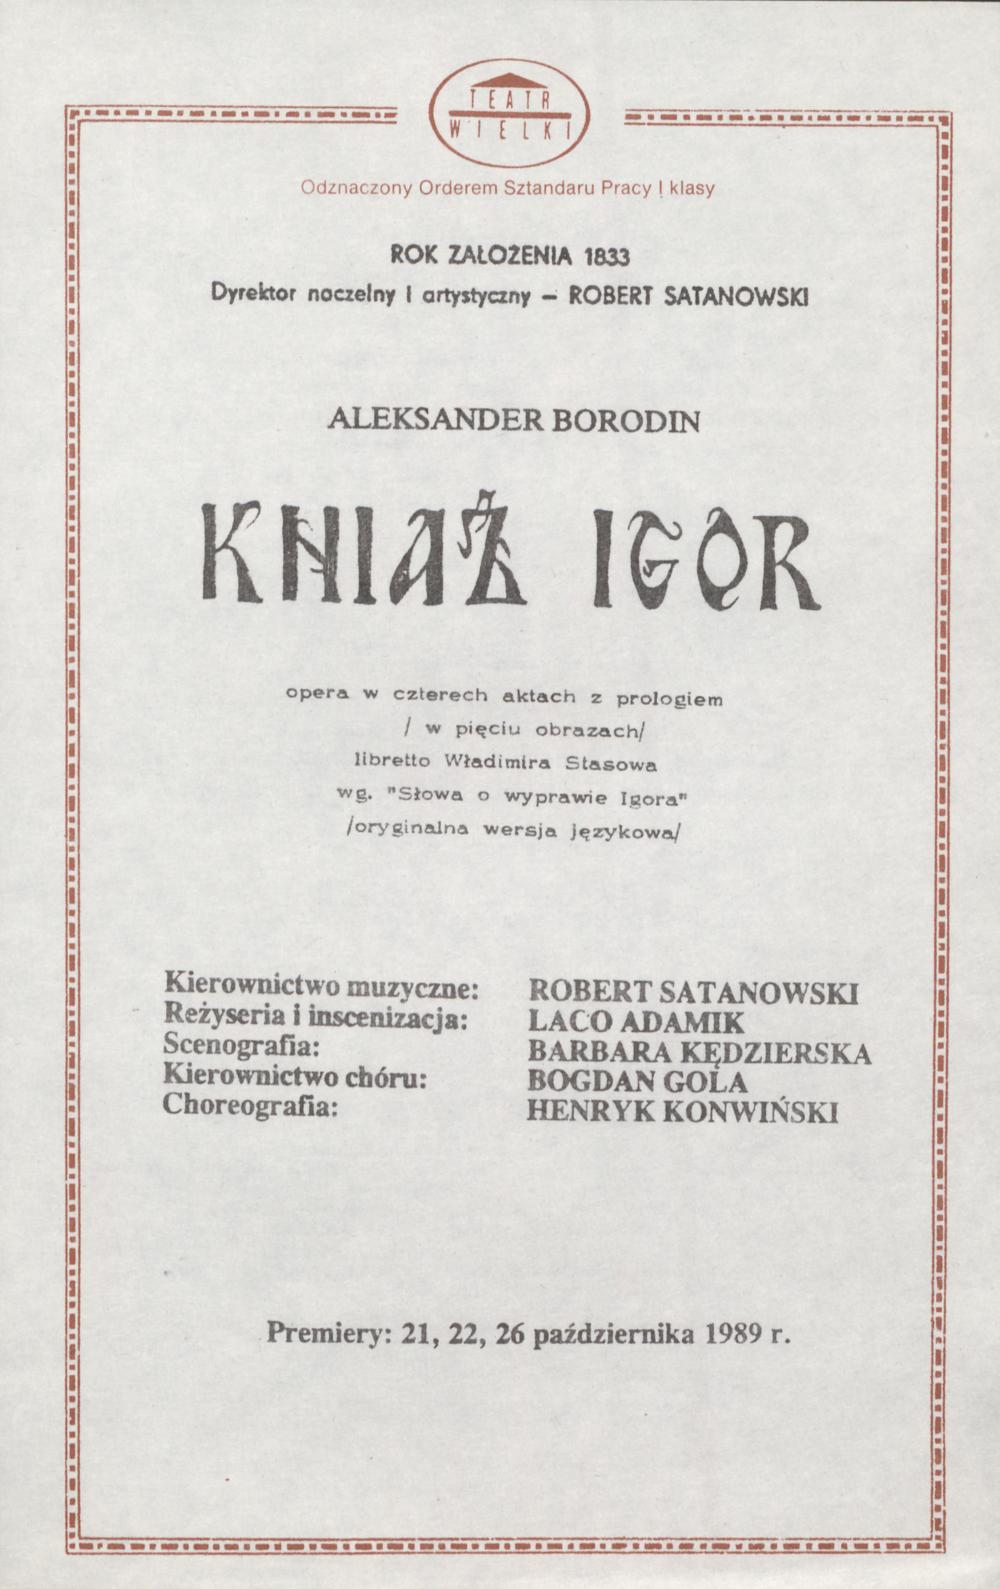 Wkładka obsadowa „Kniaź Igor” Aleksander Borodin 25-10-1989